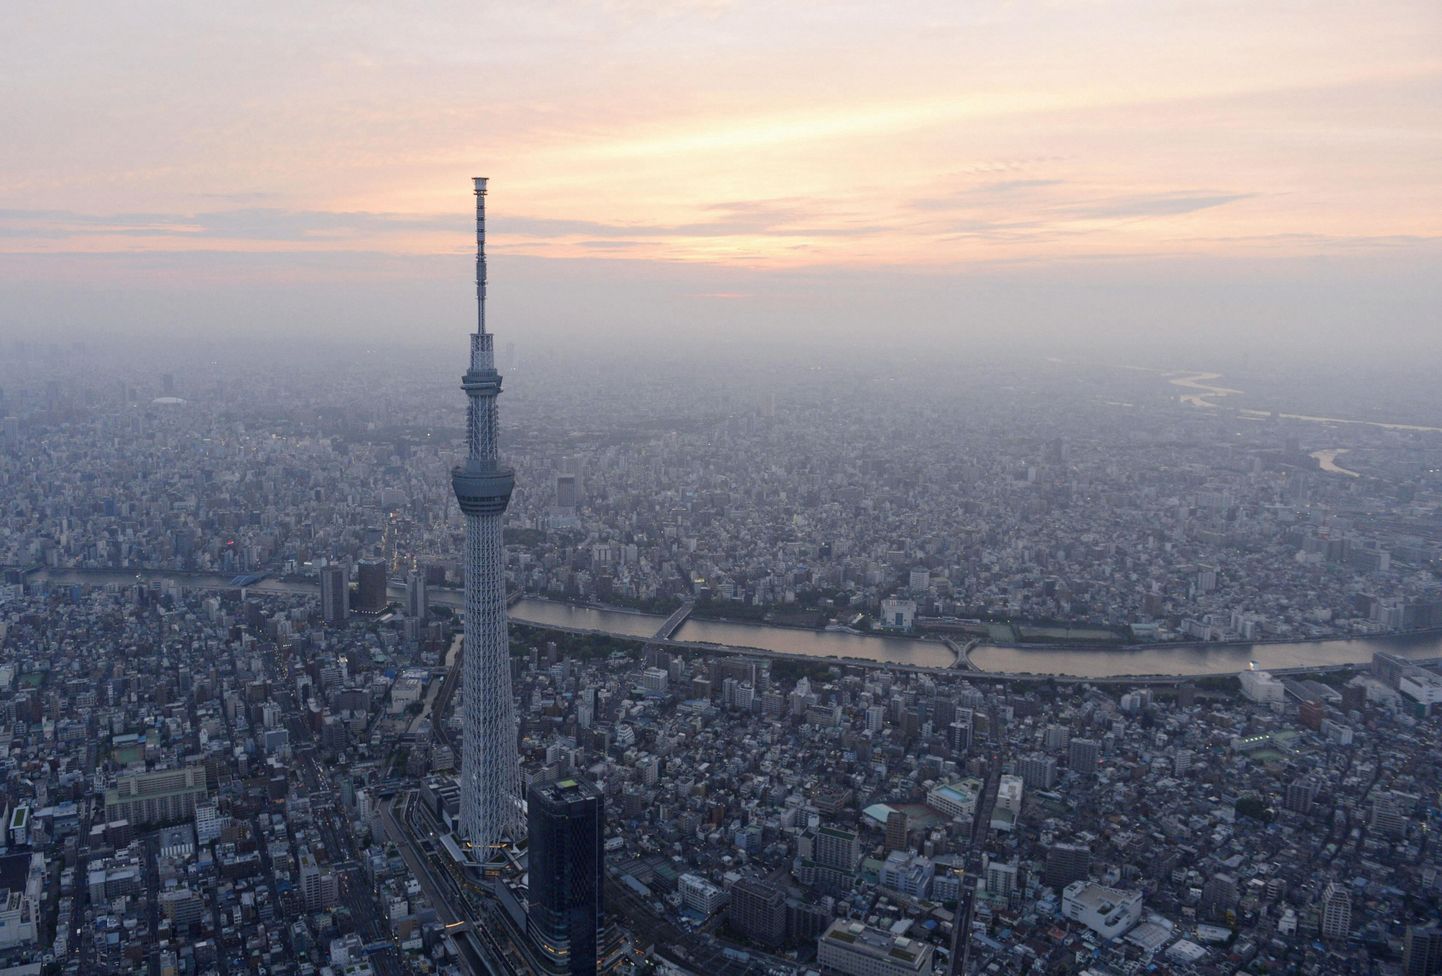 Skytree kõrgub üle kogu Tokyo metropolise, mis ulatub nii kaugele kui silm näeb.